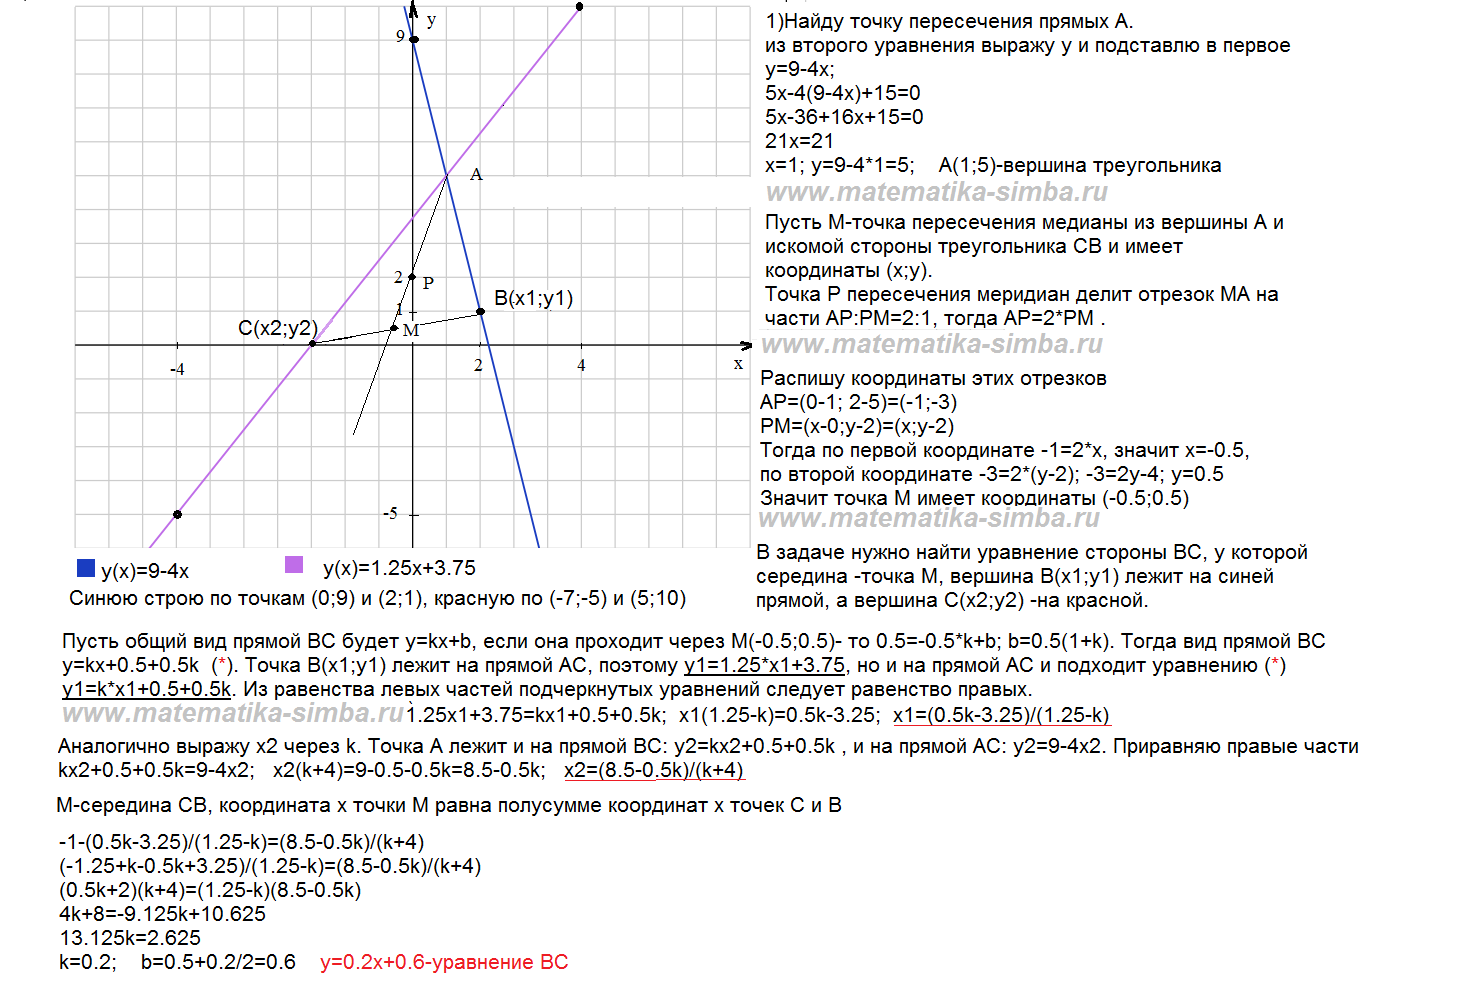 Даны уравнения высот треугольника. Уравнение сторон треугольника. Уравнения сторон треугольника по координатам его вершин. Составления уравнения сторон. Даны уравнения сторон треугольника.